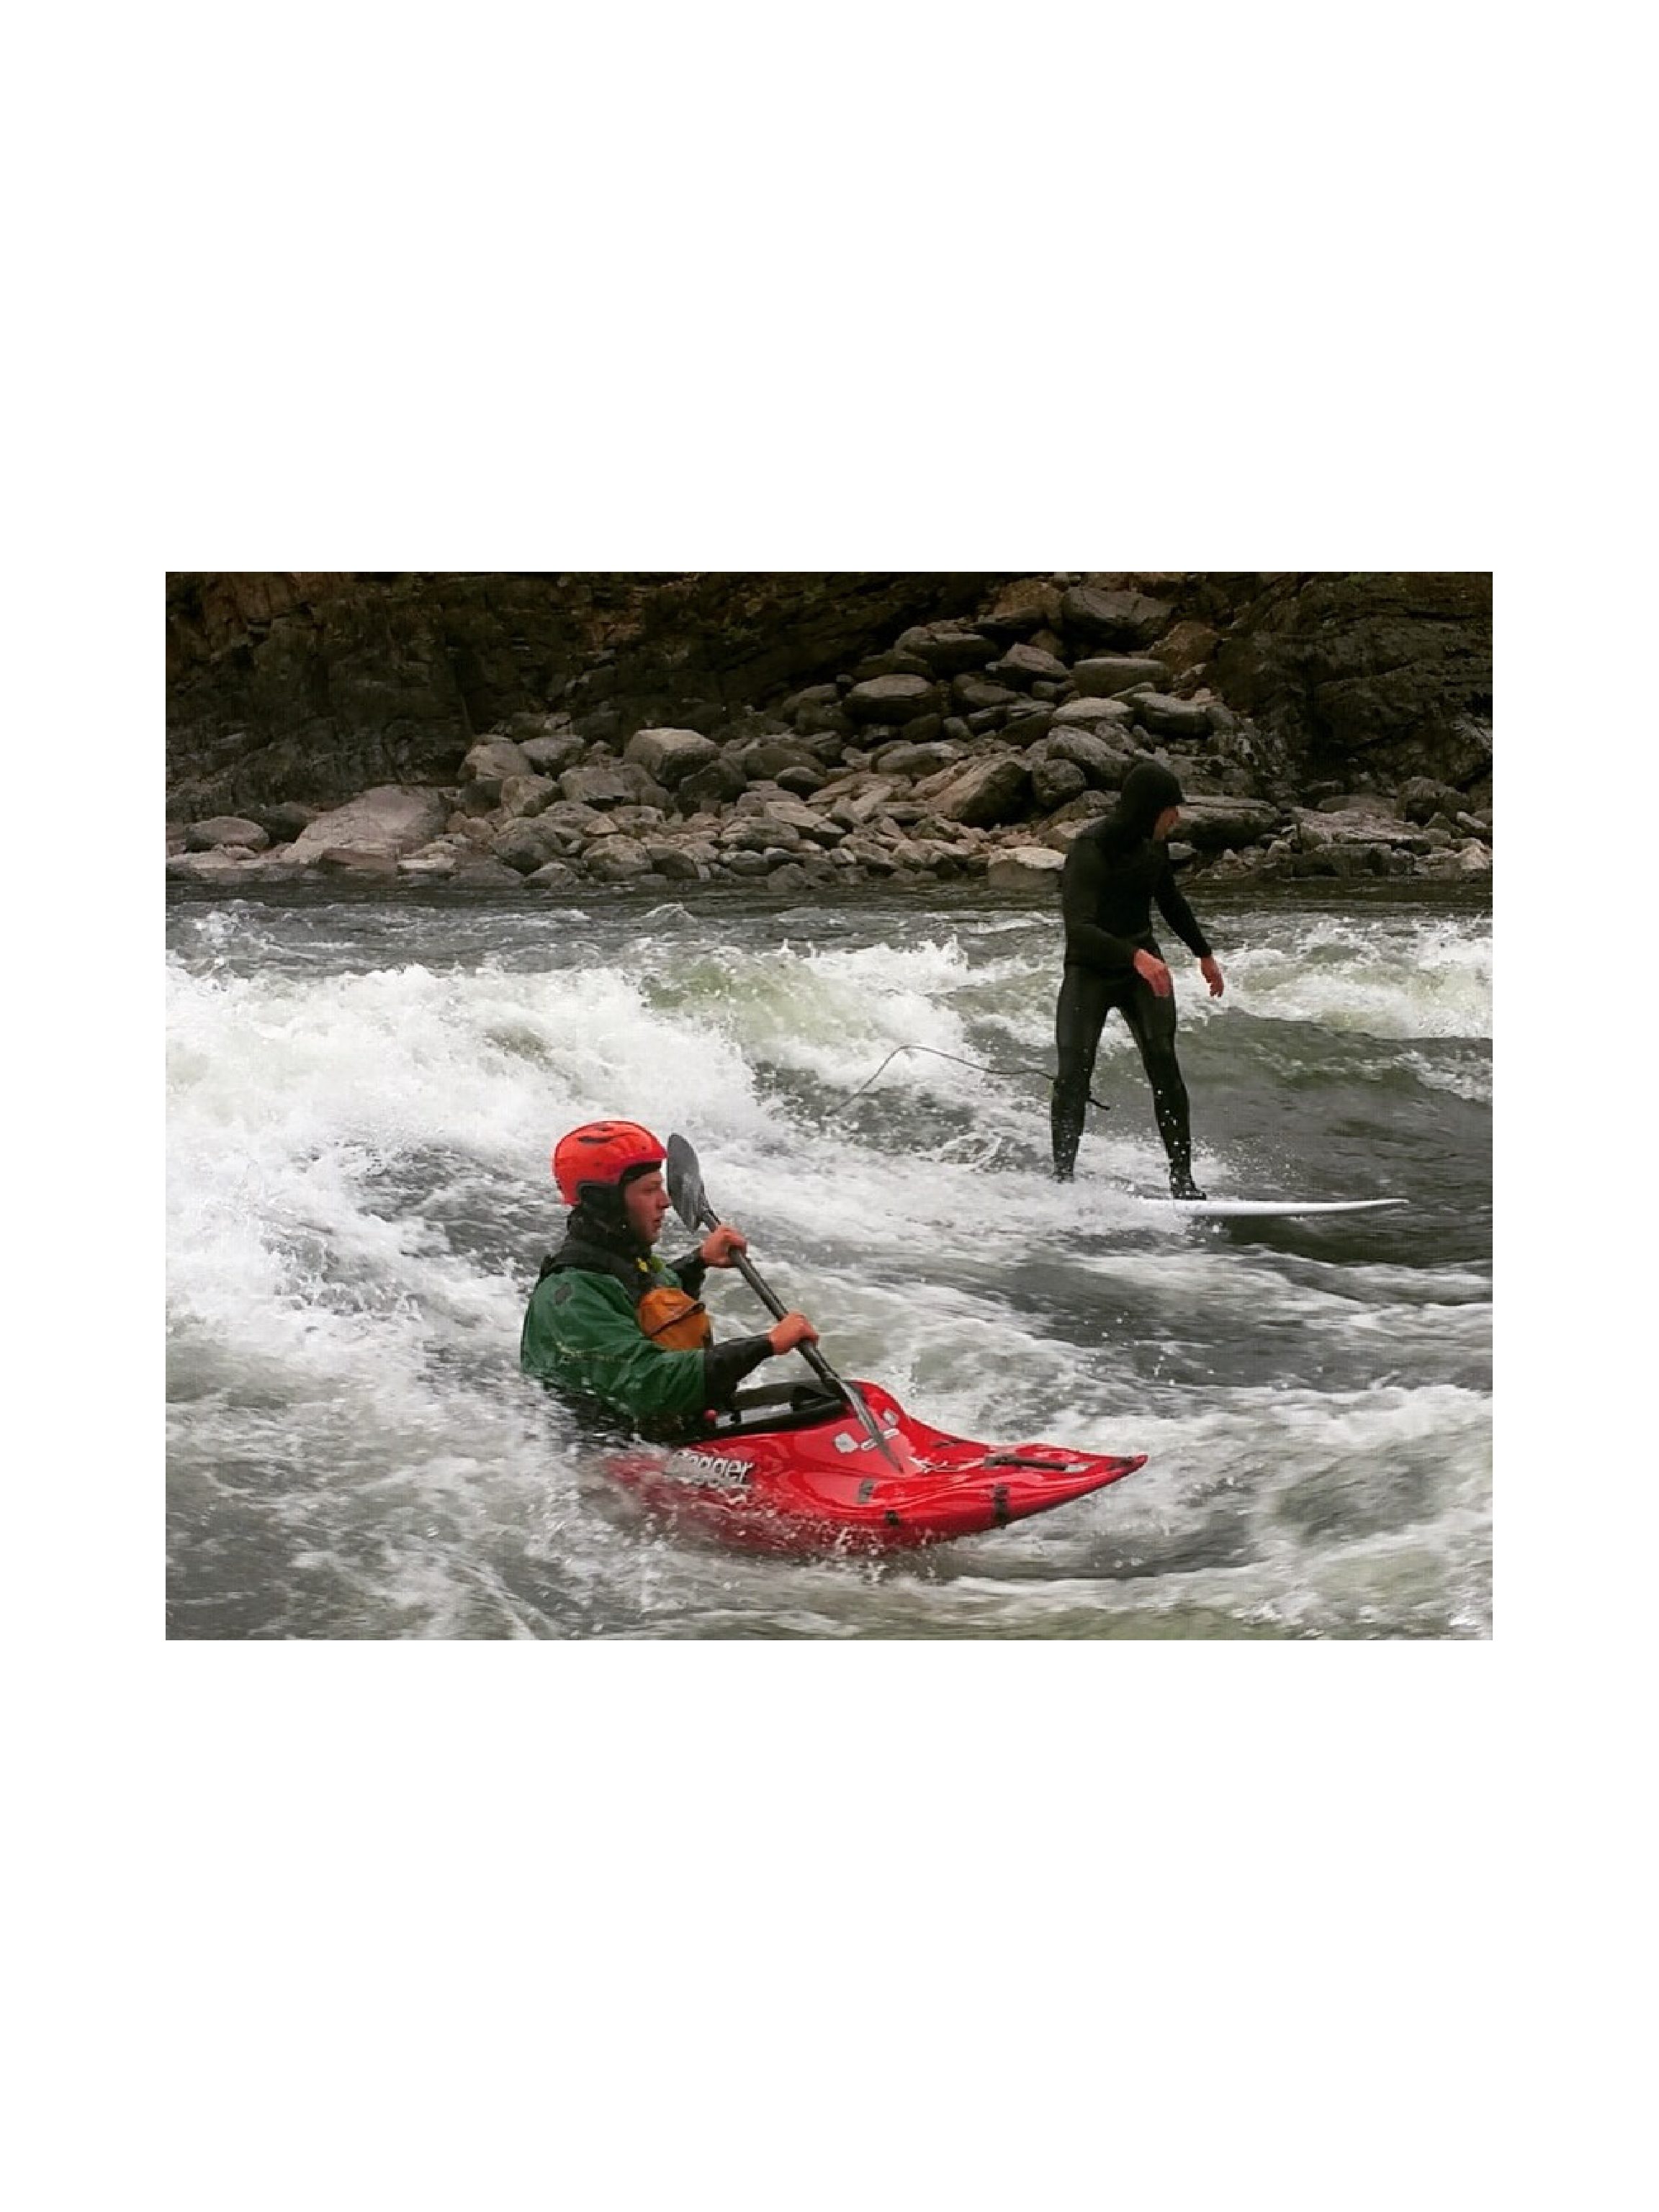 Dagger Ultrafuge – A Kayak Made for the Alberton Gorge